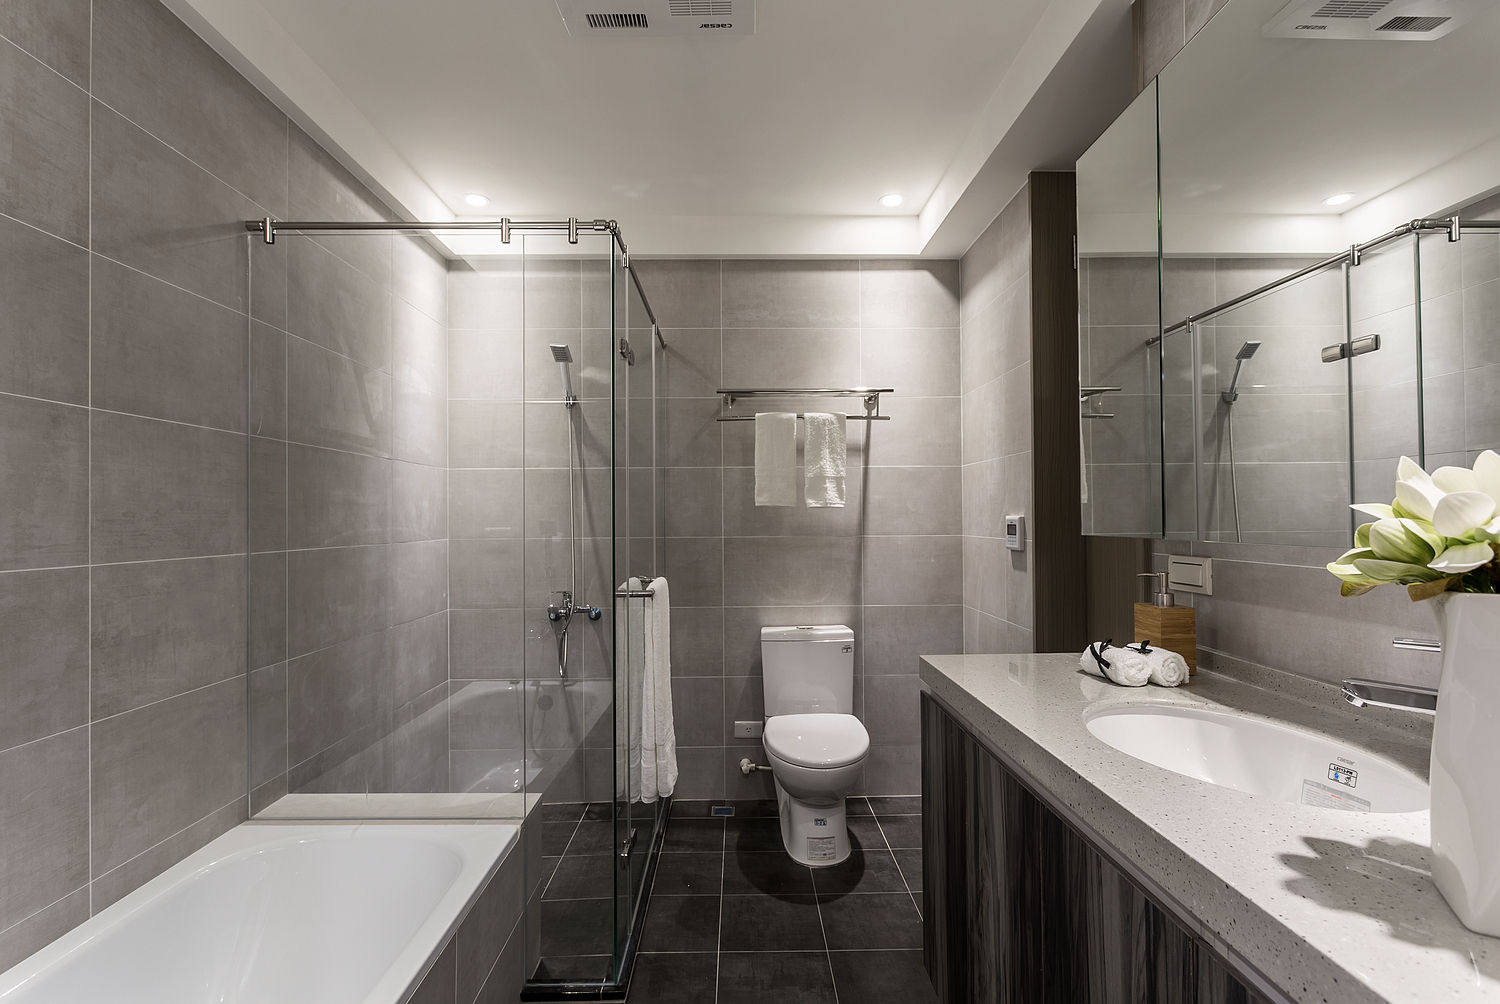 日光為題 漏水公寓的幸福新貌, E&C創意設計有限公司 E&C創意設計有限公司 Minimalist style bathroom